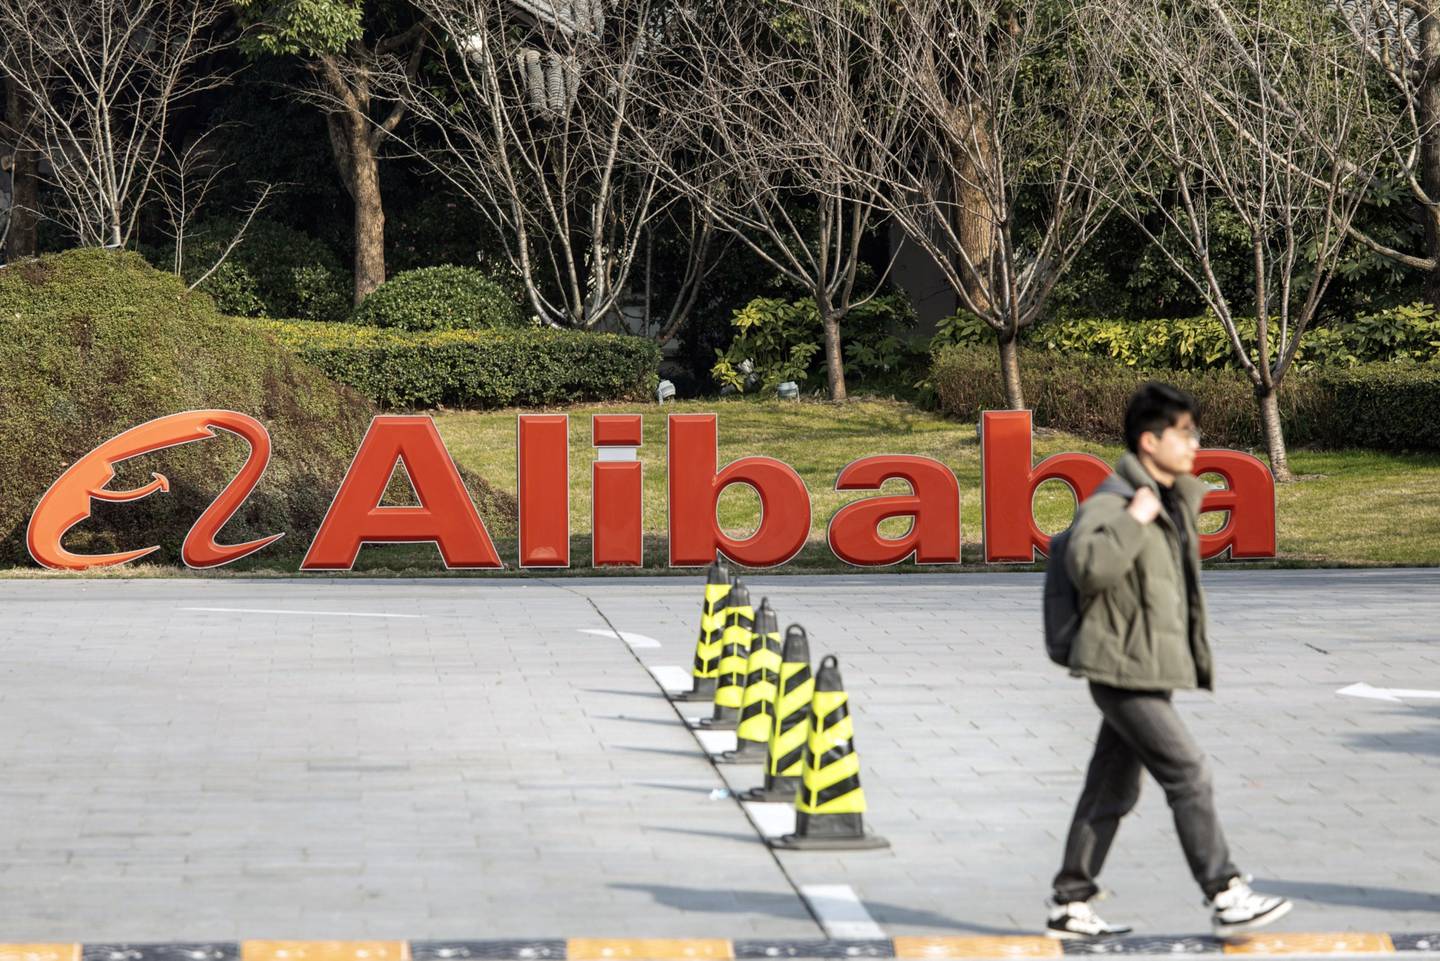 El logo de Alibaba